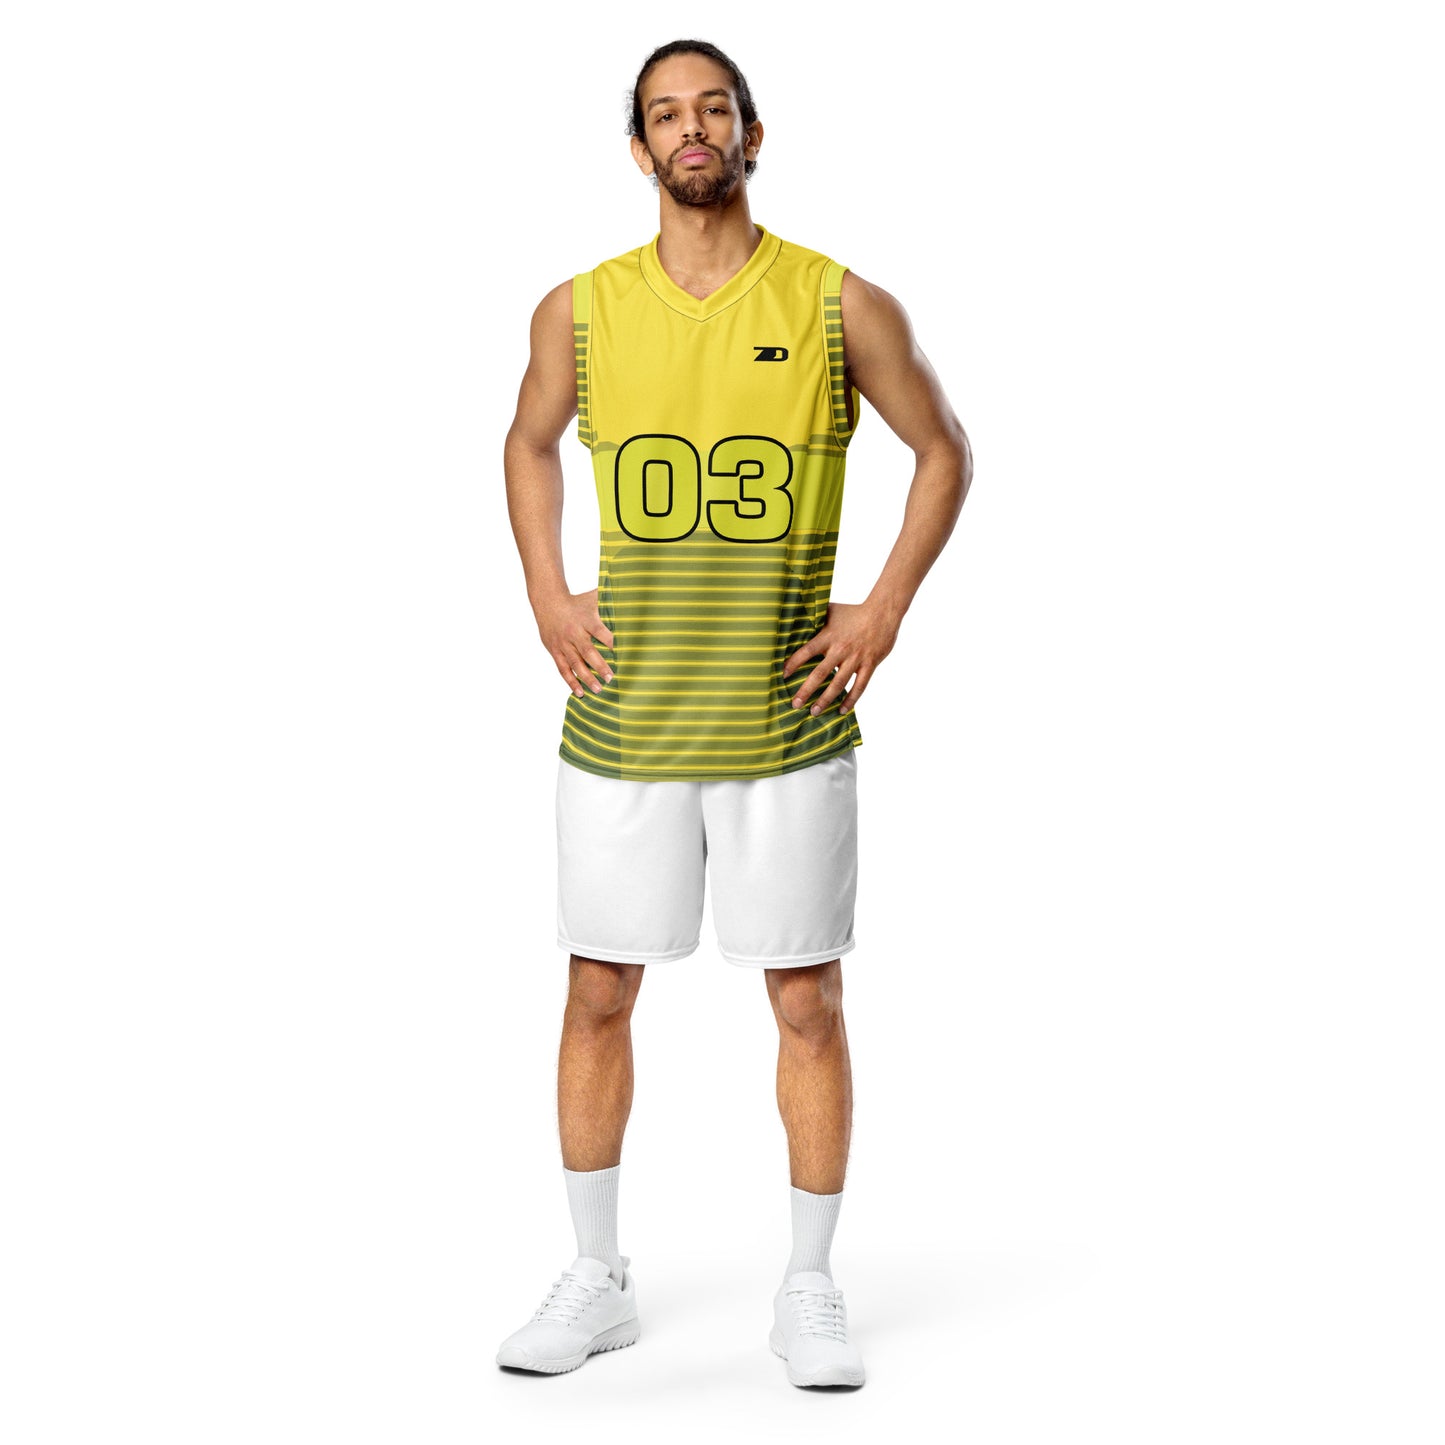 Custom Personalized Basketball Jerseys